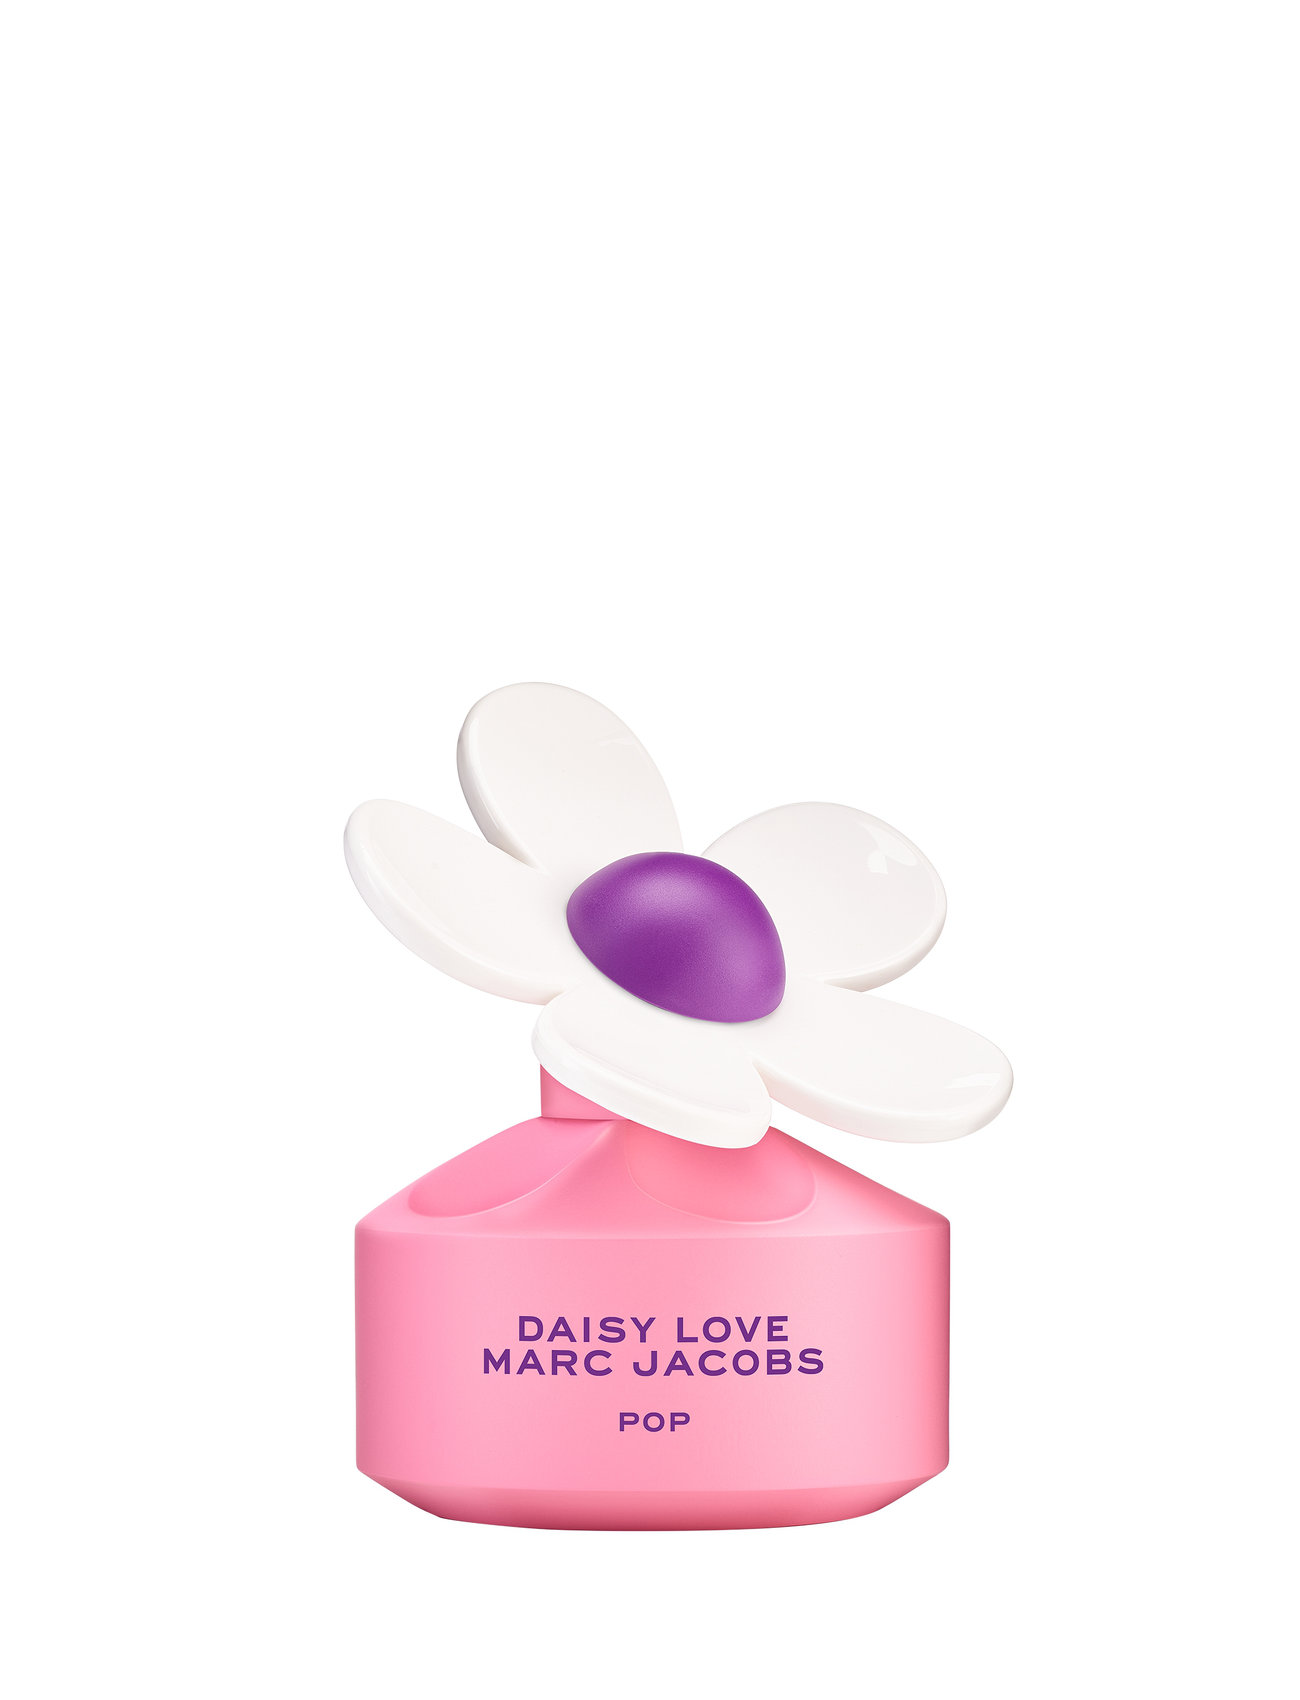 Marc Jacobs Daisy Love Pop Eau De Toilette 50 Ml Parfume Eau De Toilette Nude Marc Jacobs Fragrance